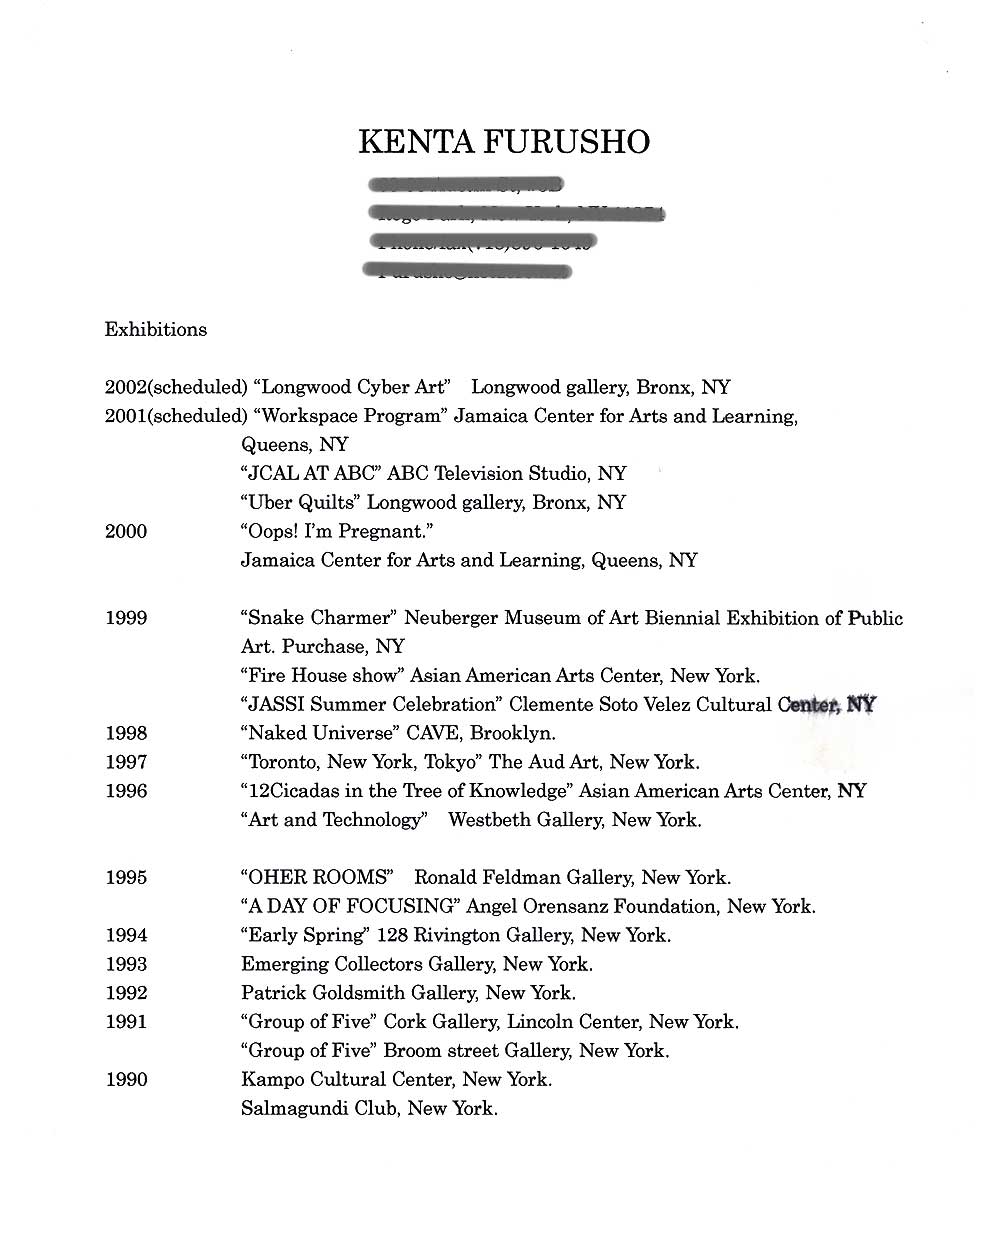 Kenta Furusho's Resume, pg 1